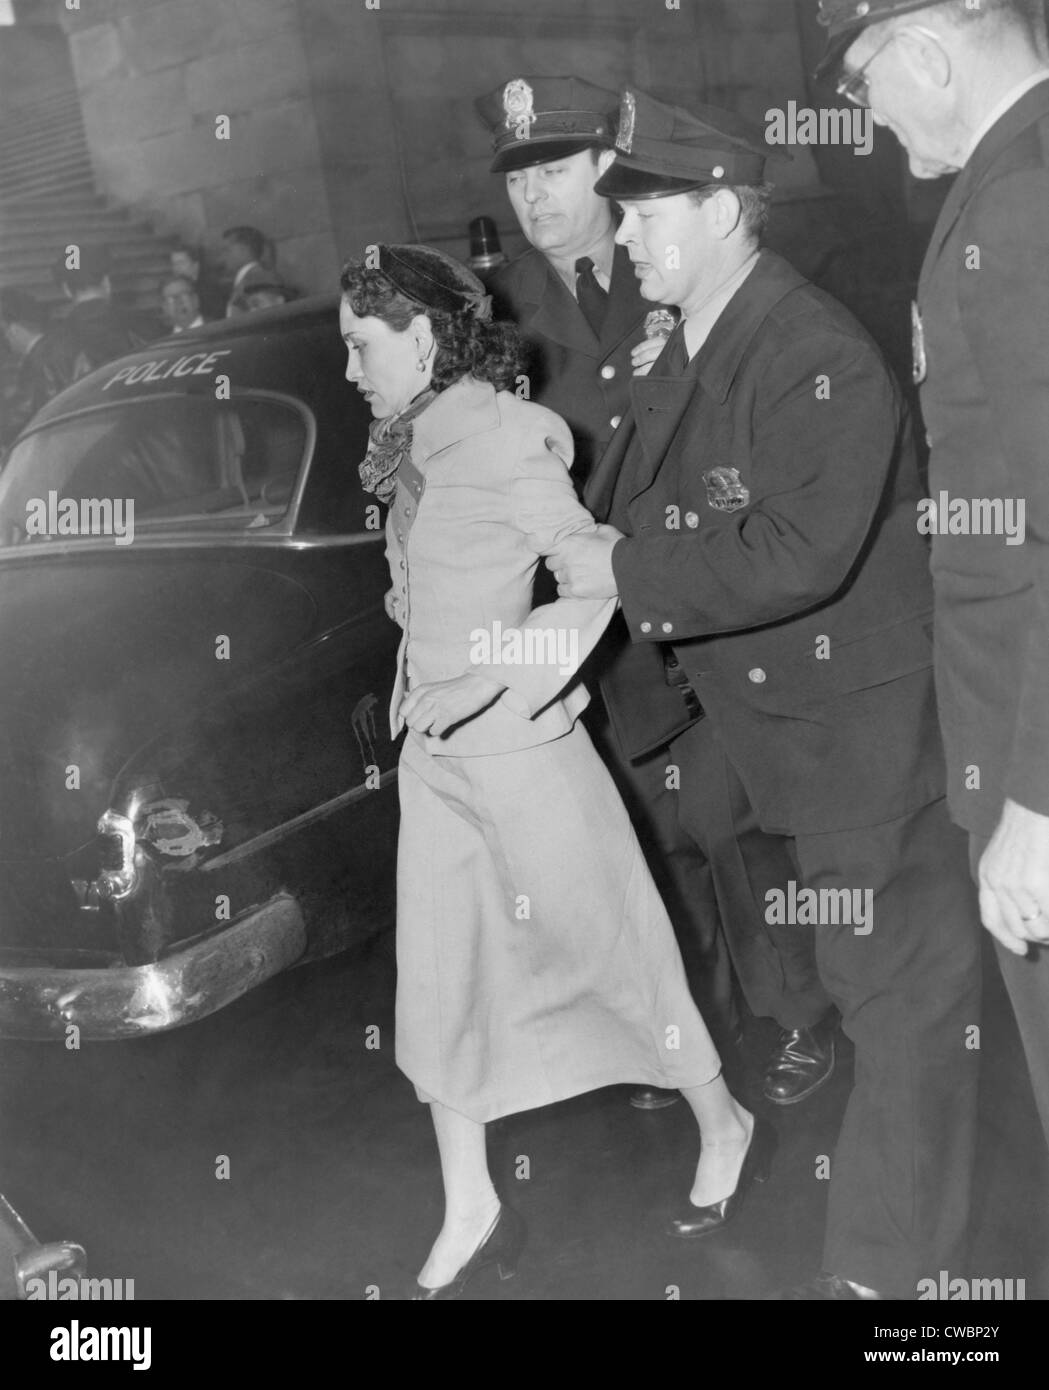 Lolita Lebron (b. 1919), sotto arresto in riprese di cinque membri del Congresso degli Stati Uniti nella casa dei rappresentanti il 1 marzo 1954. Ella Foto Stock